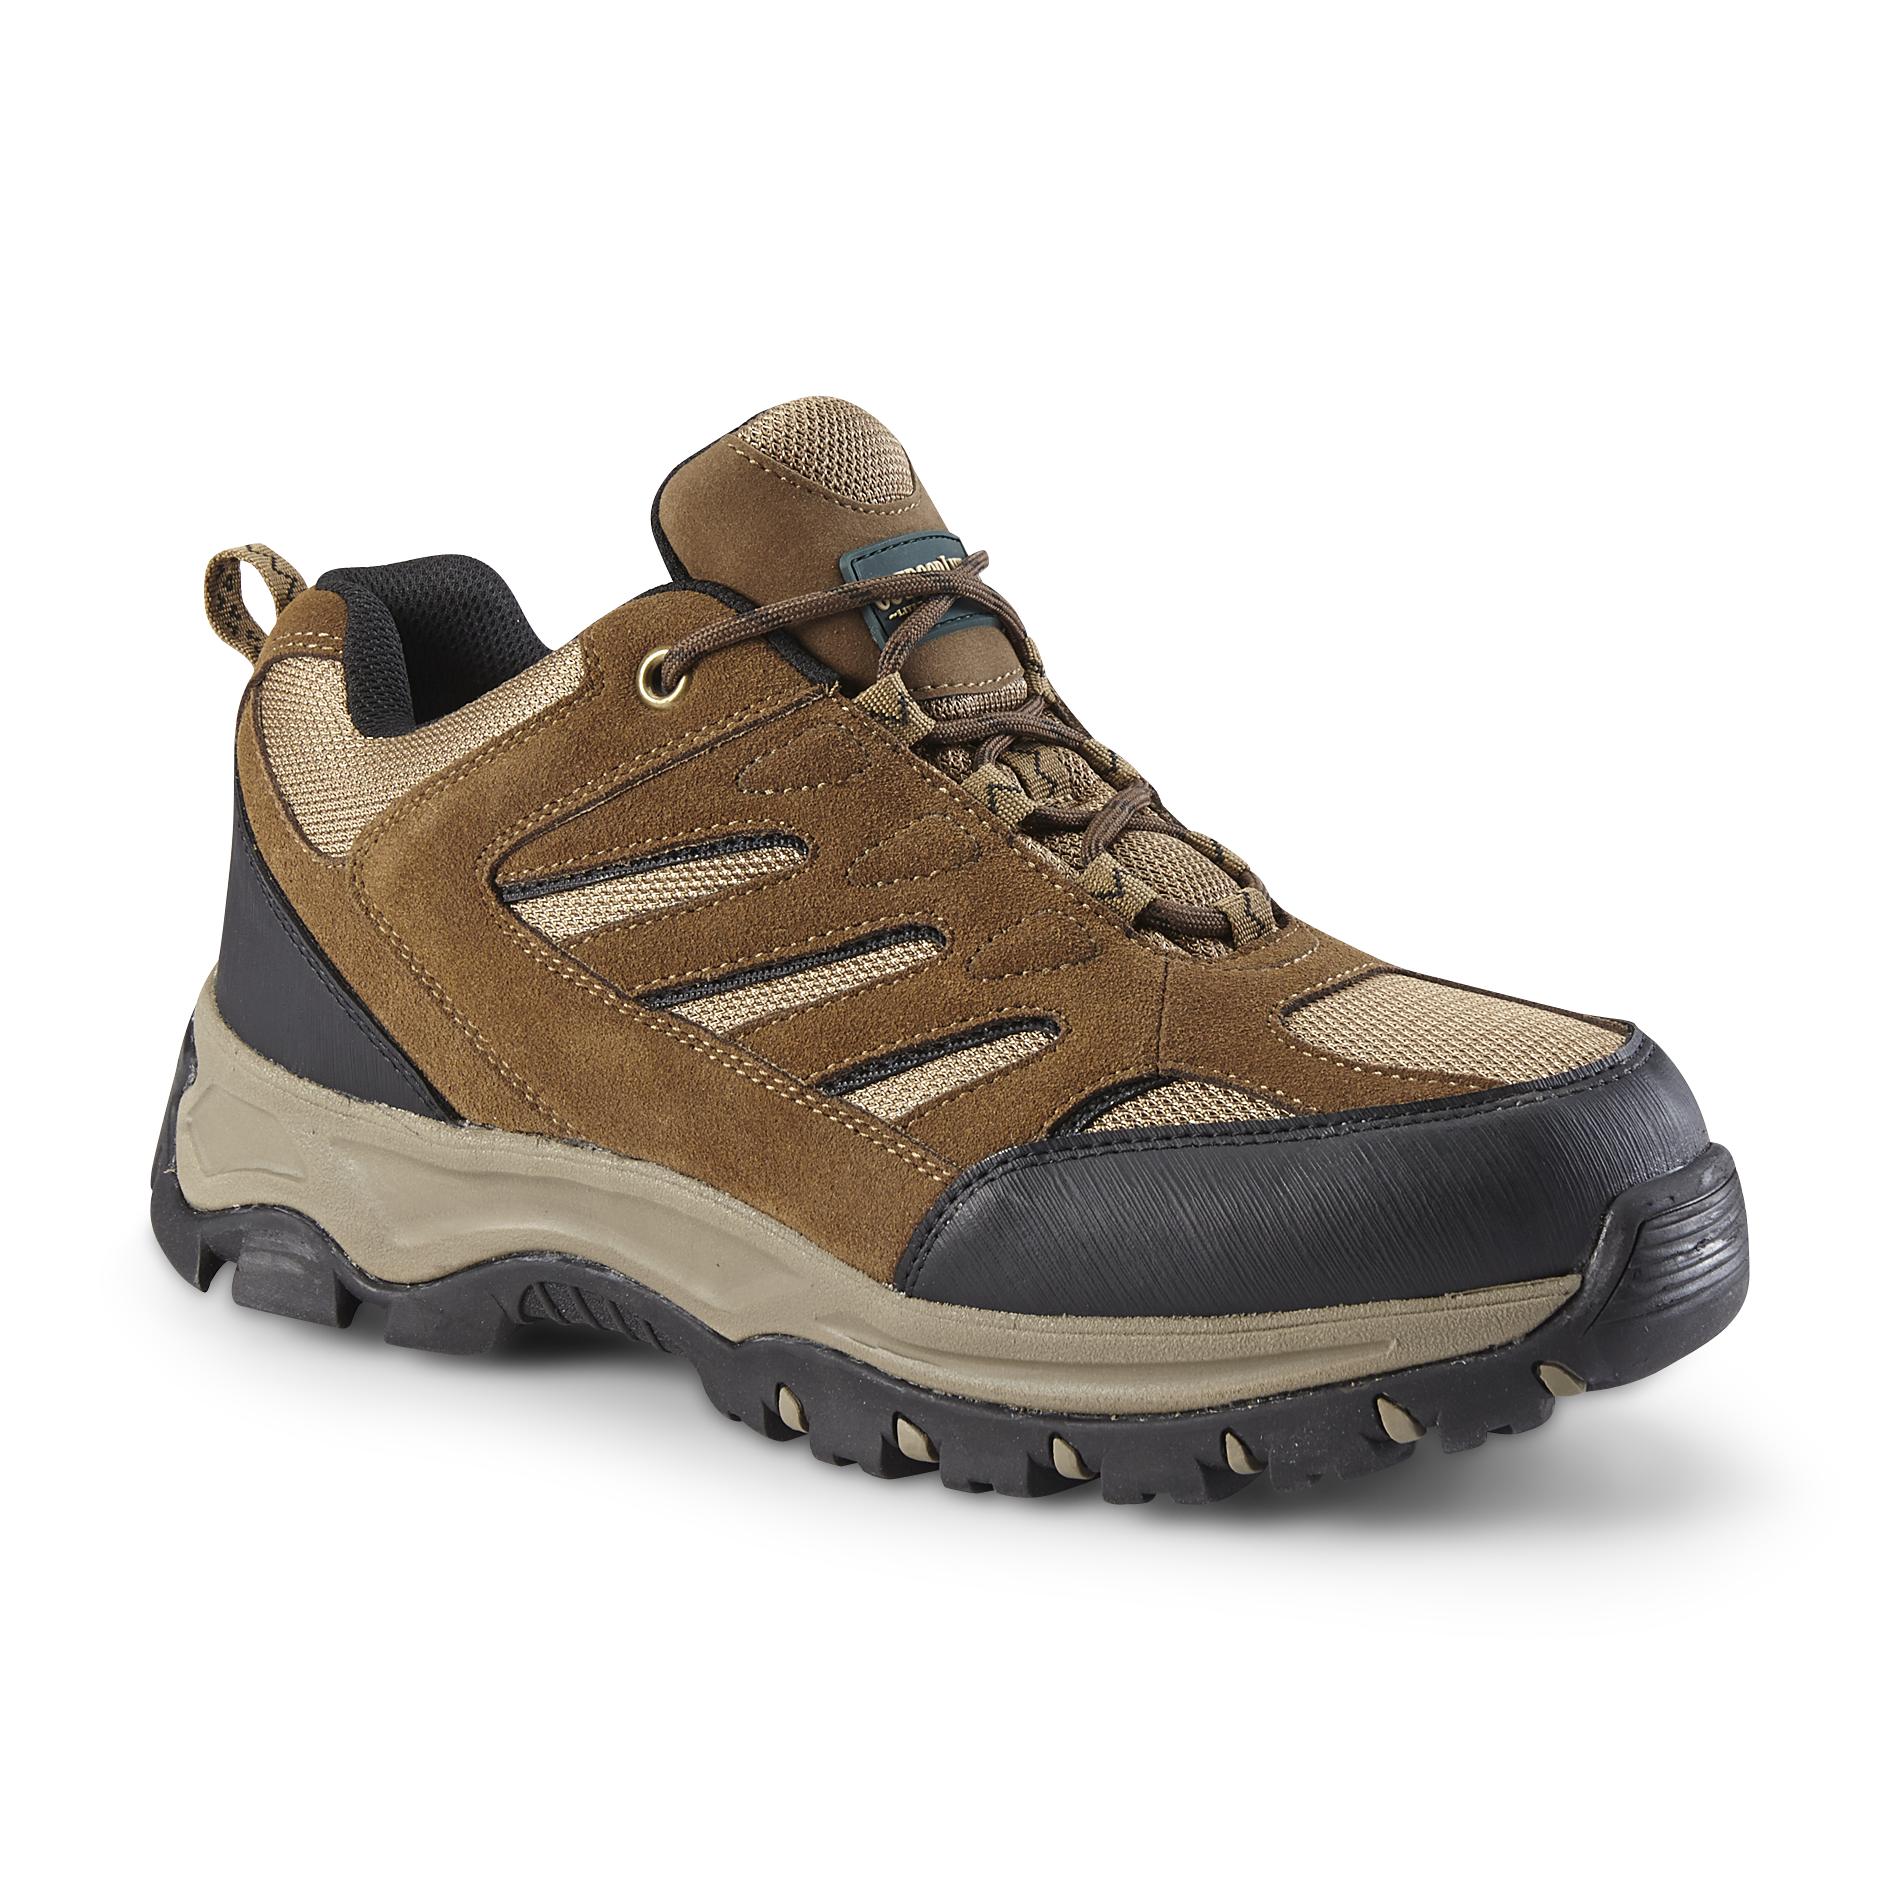 Outdoor Life Men's Clark Suede/Mesh Hiking Shoe - Brown